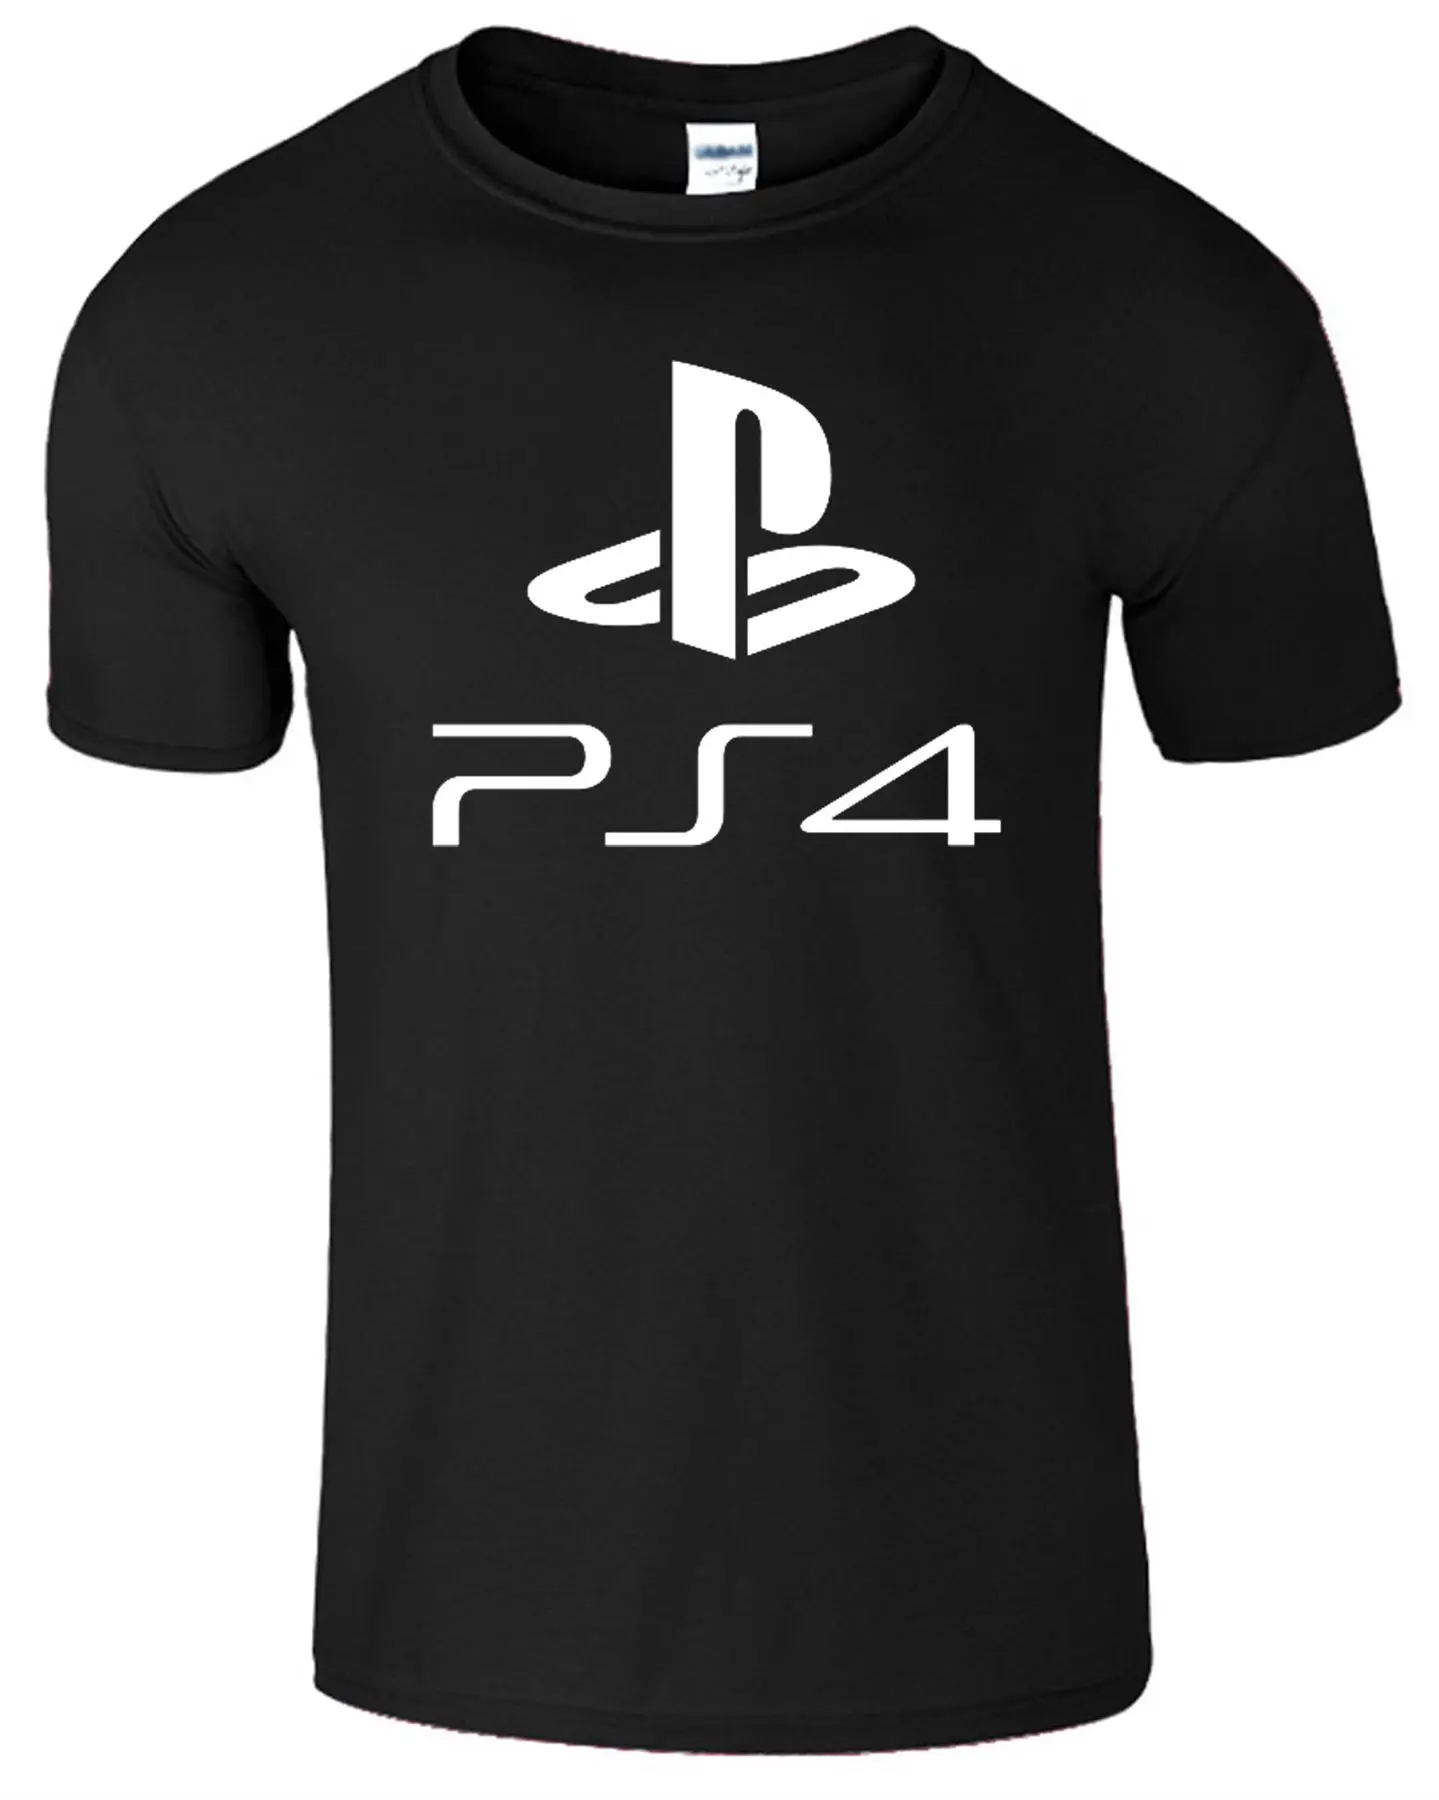 Playstation 4 Ps4 футболка Для мужчин s Gameing Забавный подарок для игры в Настоящее Топ футболка классная Повседневное гордость футболка Для мужчин